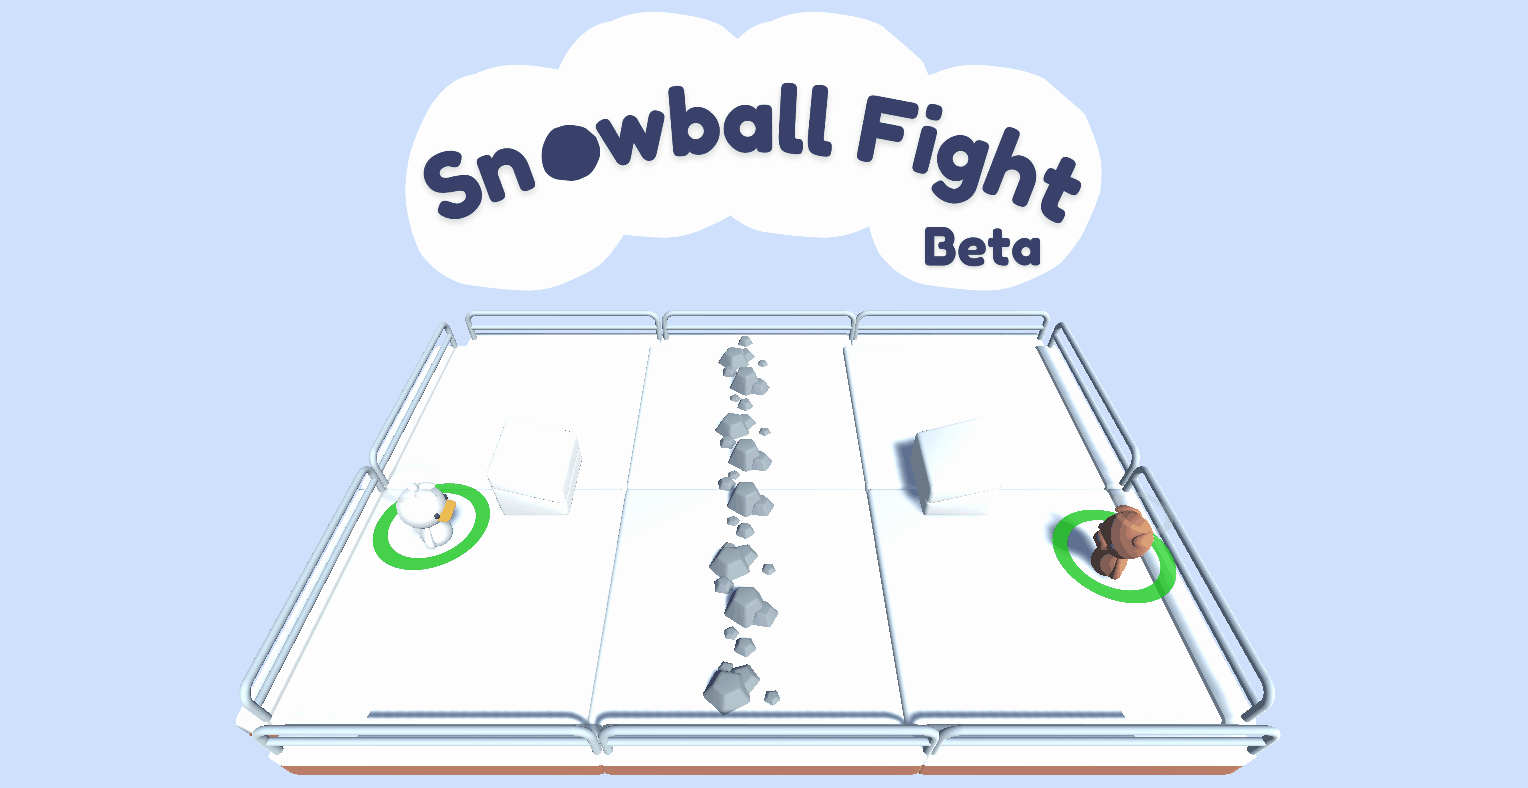 snowballfight.gif